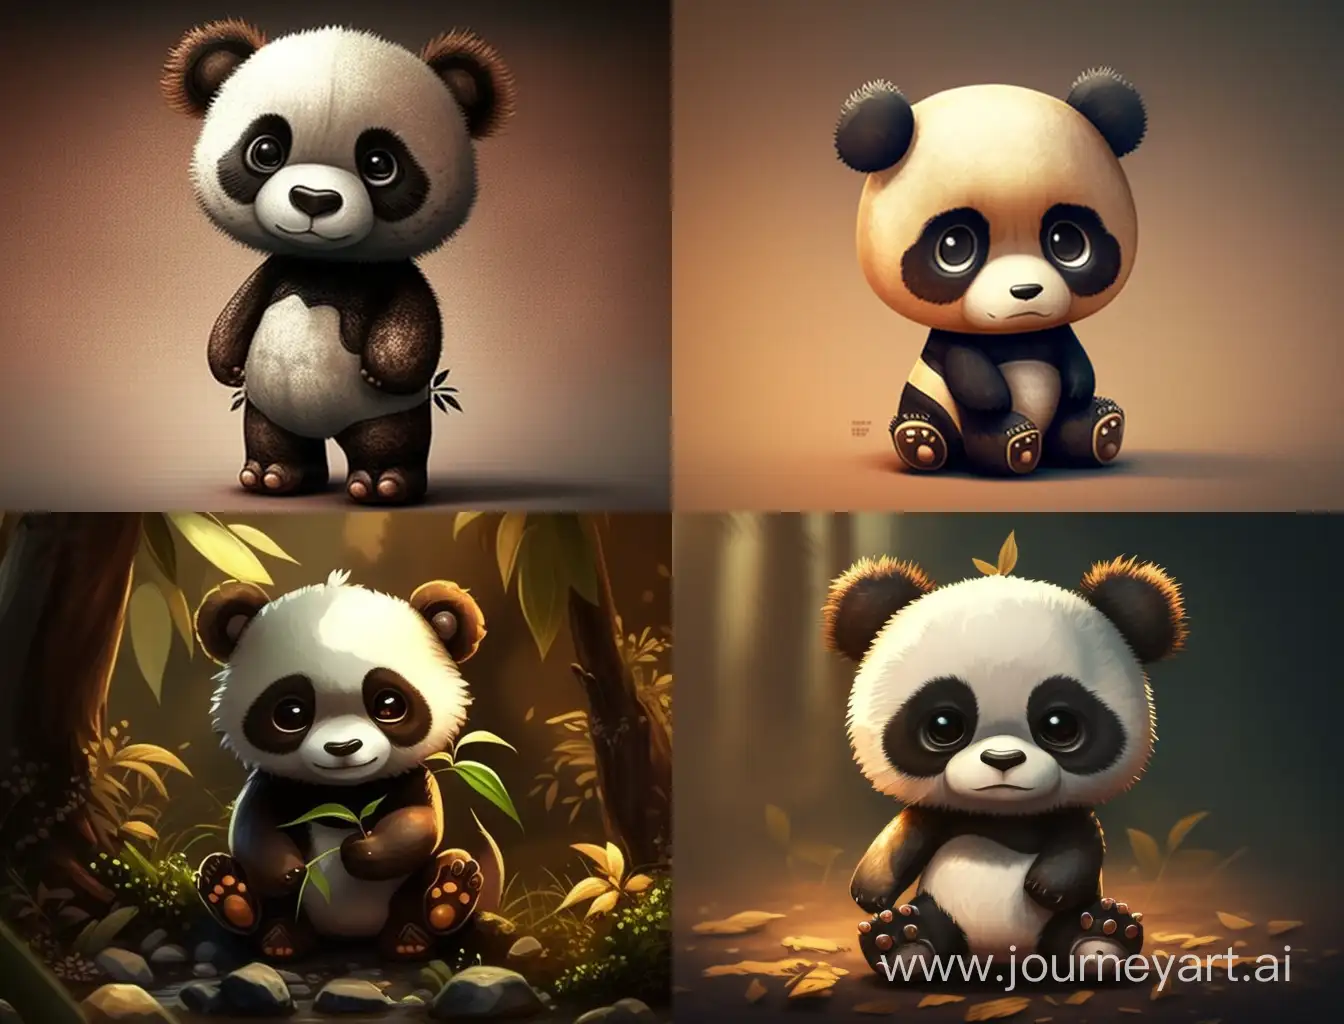 Adorable-Cartoon-Panda-with-a-Playful-Stance